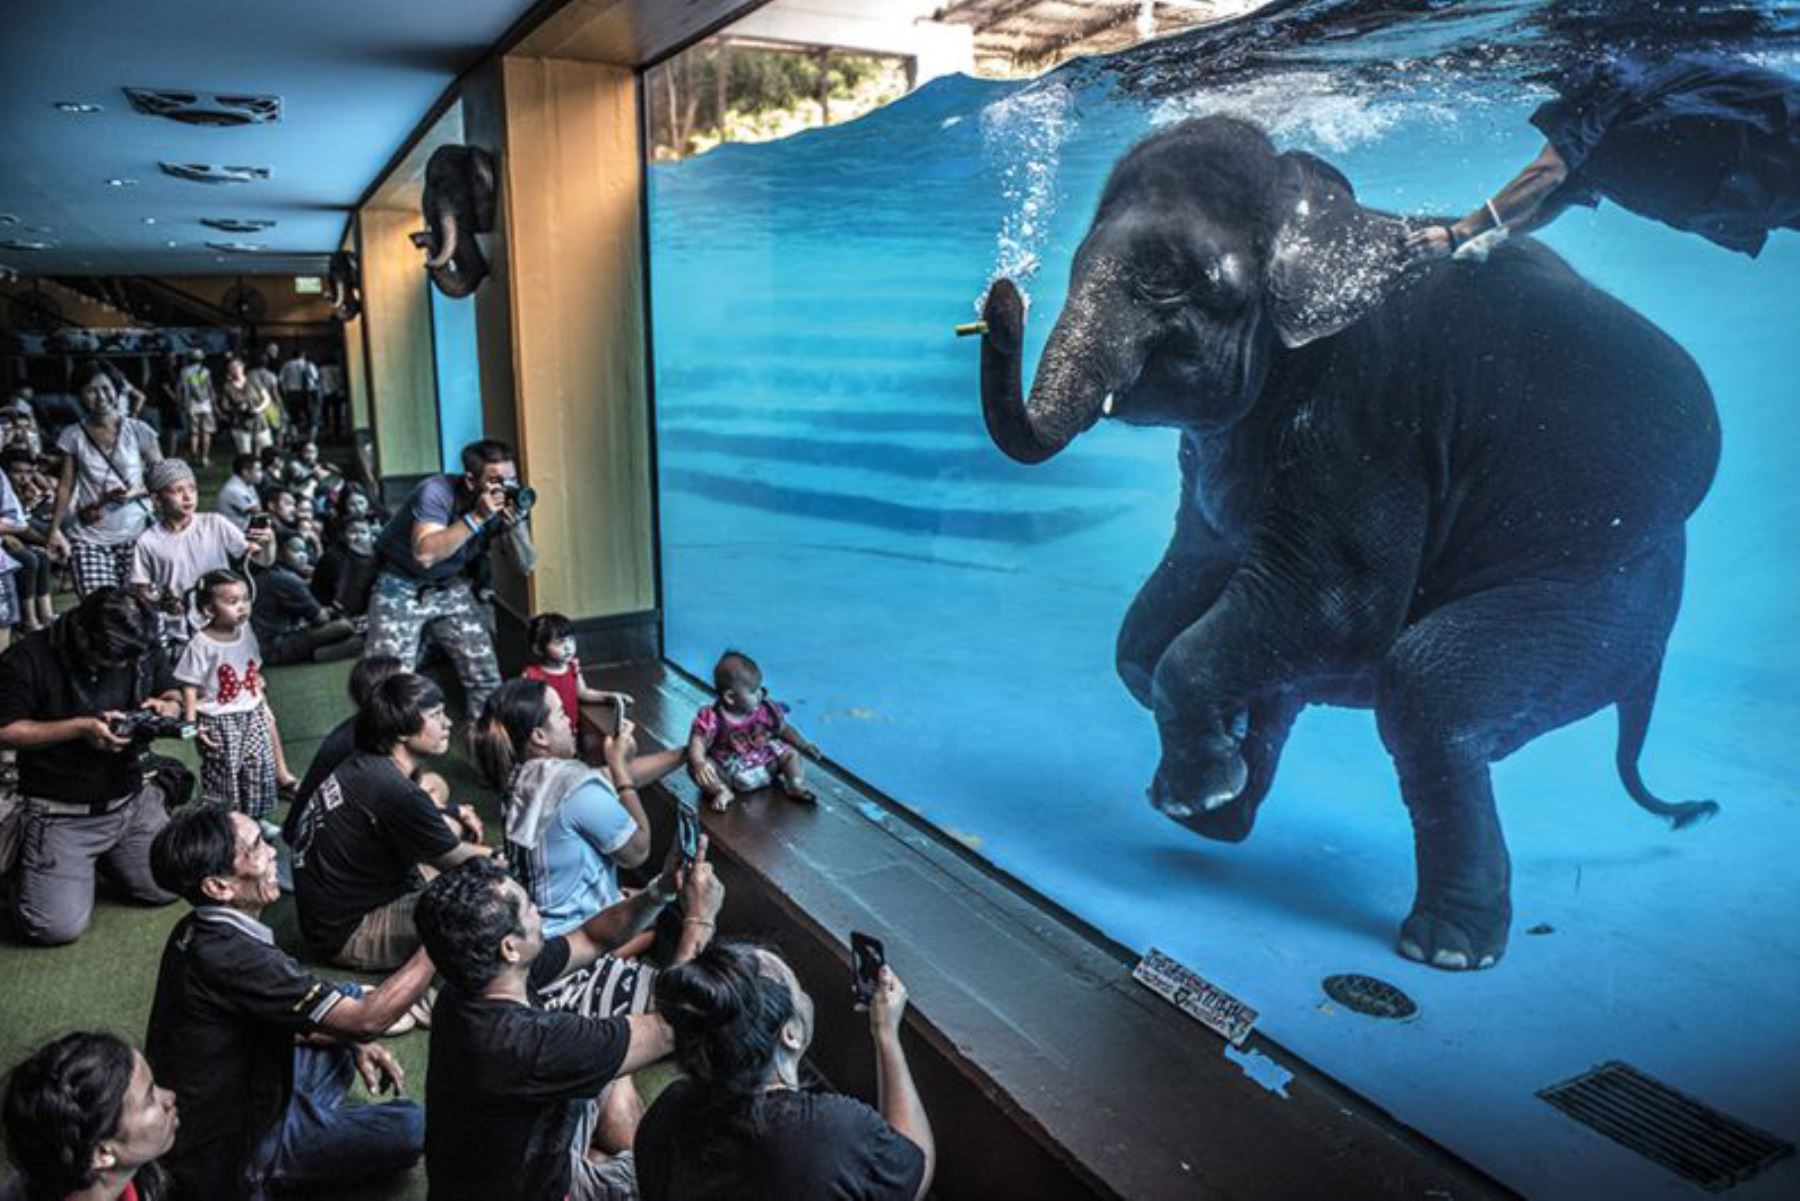 Adam Oswell recibió el premio de Periodismo Fotográfico por esta imagen de visitantes en un zoológico de Tailandia que observan a un elefante joven haciendo un despliegue bajo el agua. El turismo de elefantes ha aumentado por toda Asia. Ahora en Tailandia hay más elefantes en cautiverio que en hábitats silvestres. Foto: ADAM OSWELL/WPY